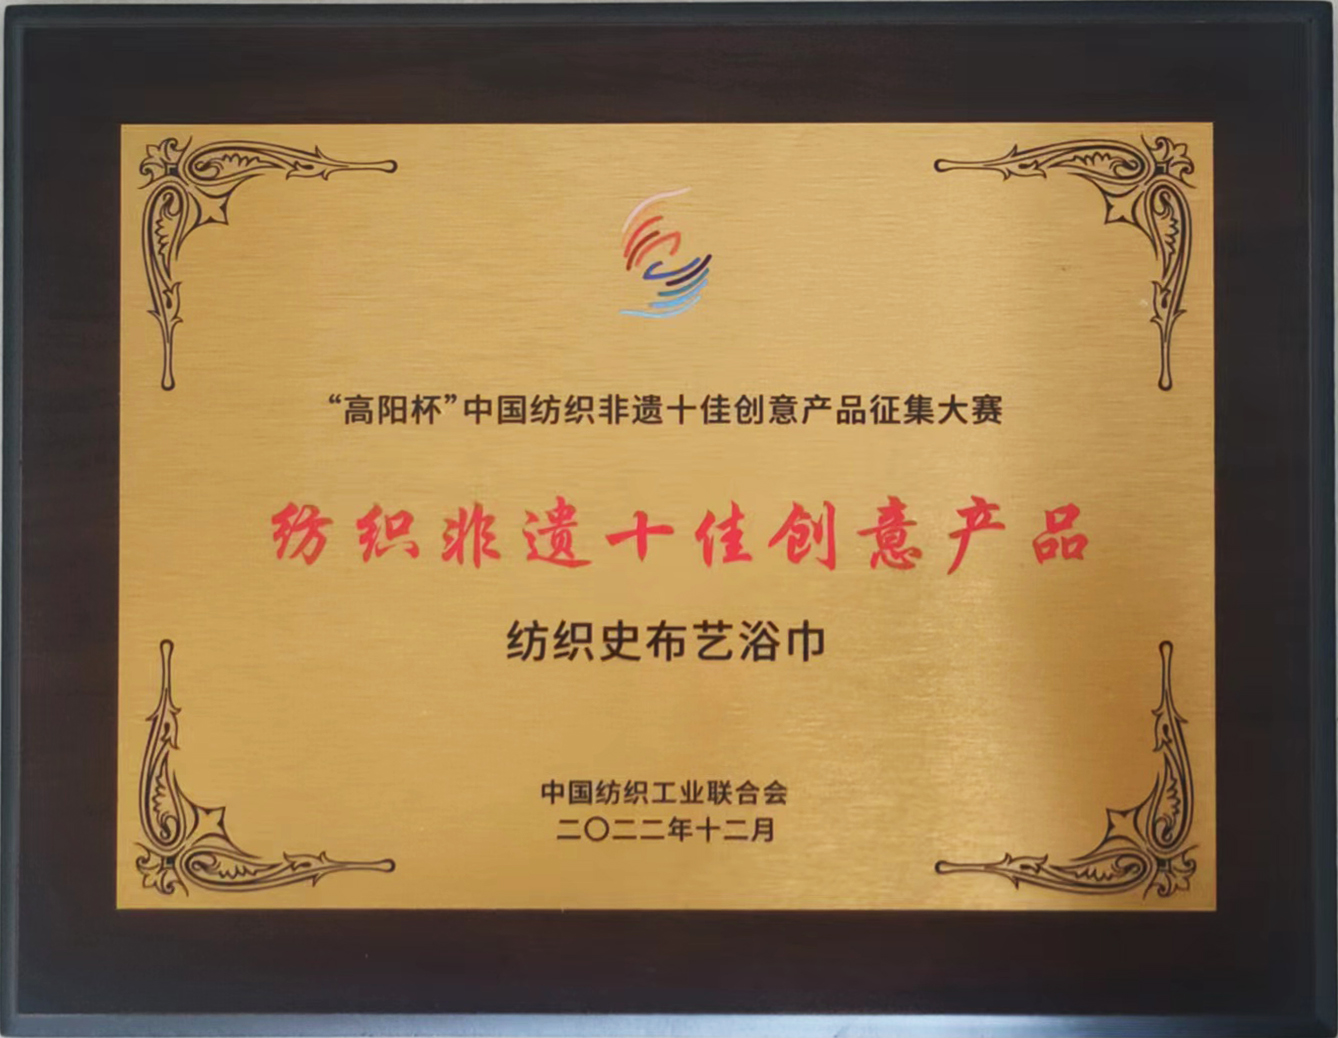 恭祝瑞春纺织荣获“中国纺织非遗十佳创意产品”荣誉称号